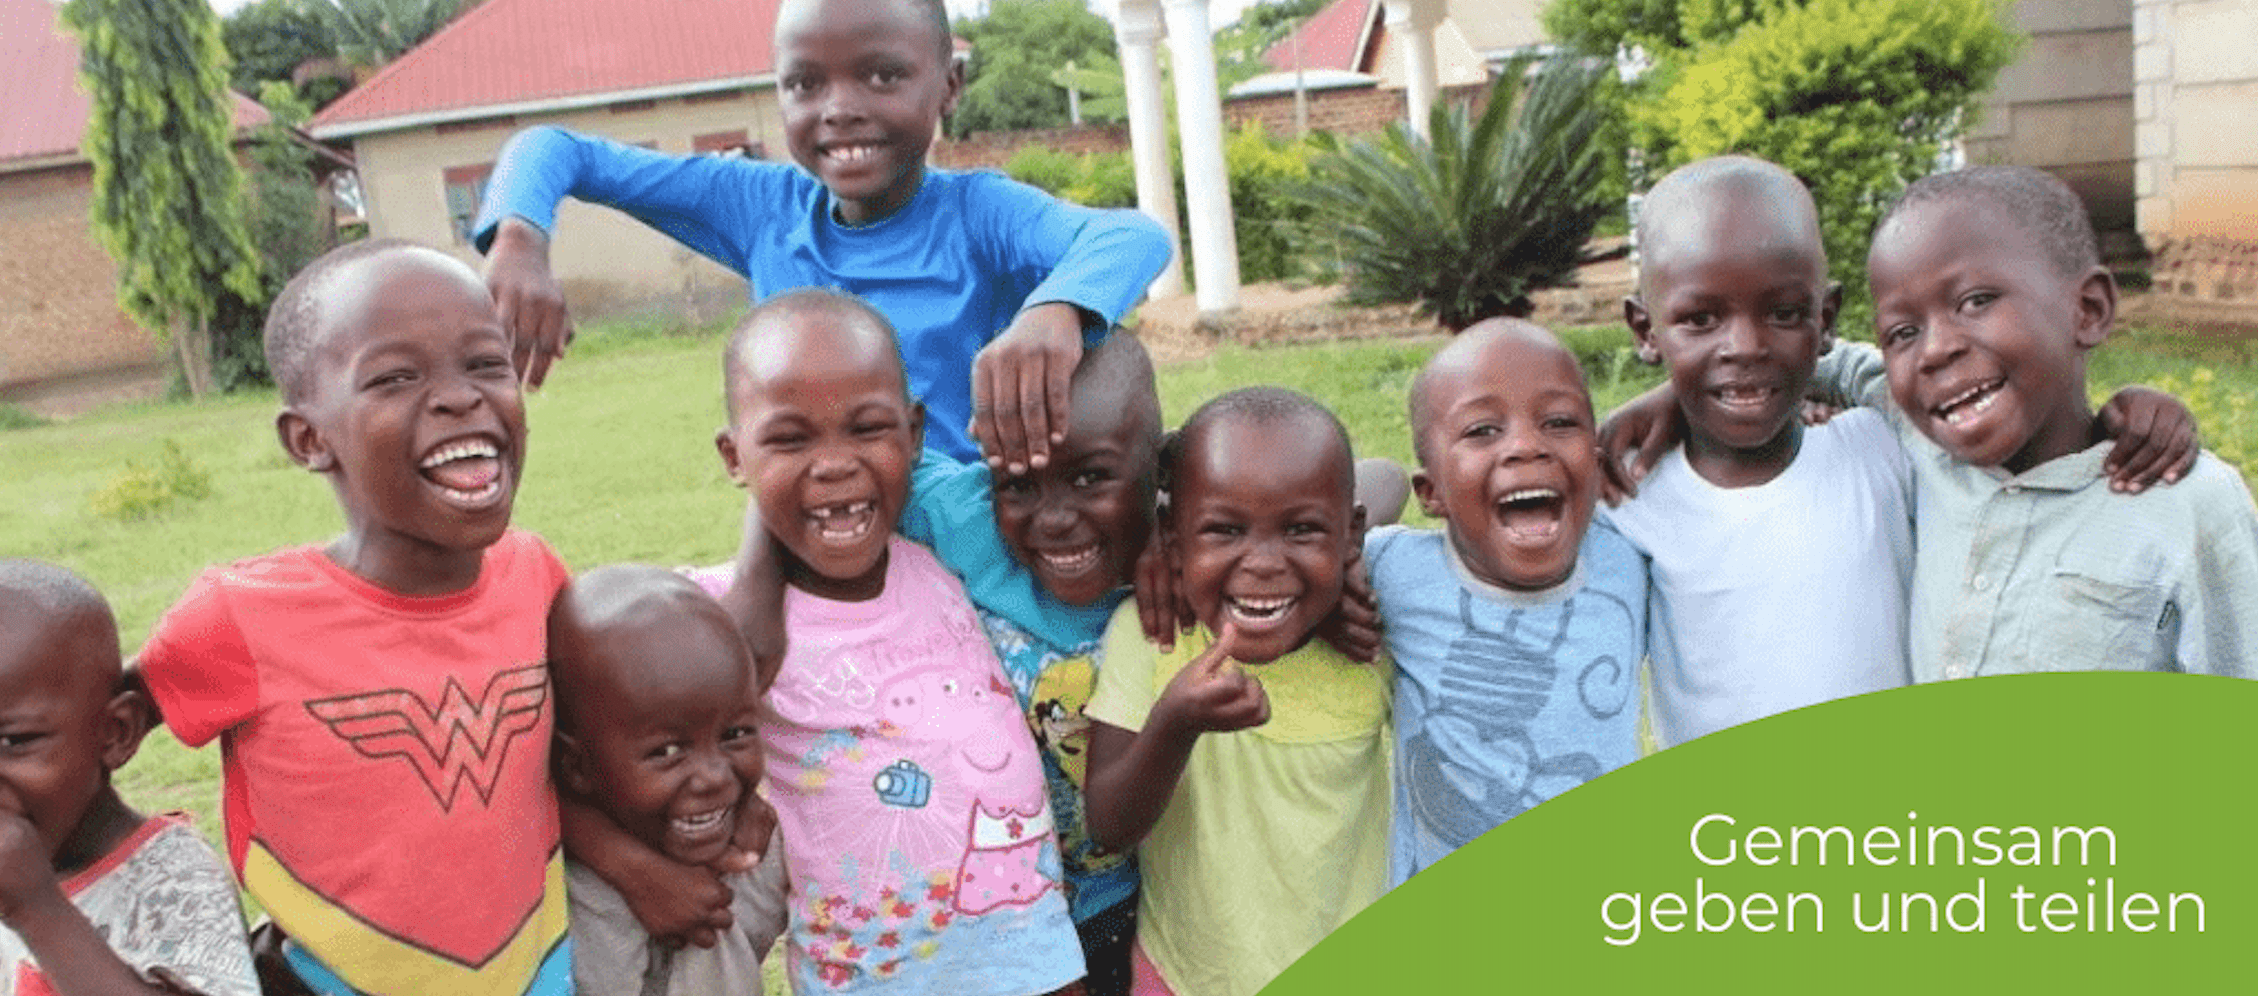 Fördermitgliedschaft Geben und teilen für Ugandas Strassenkinder